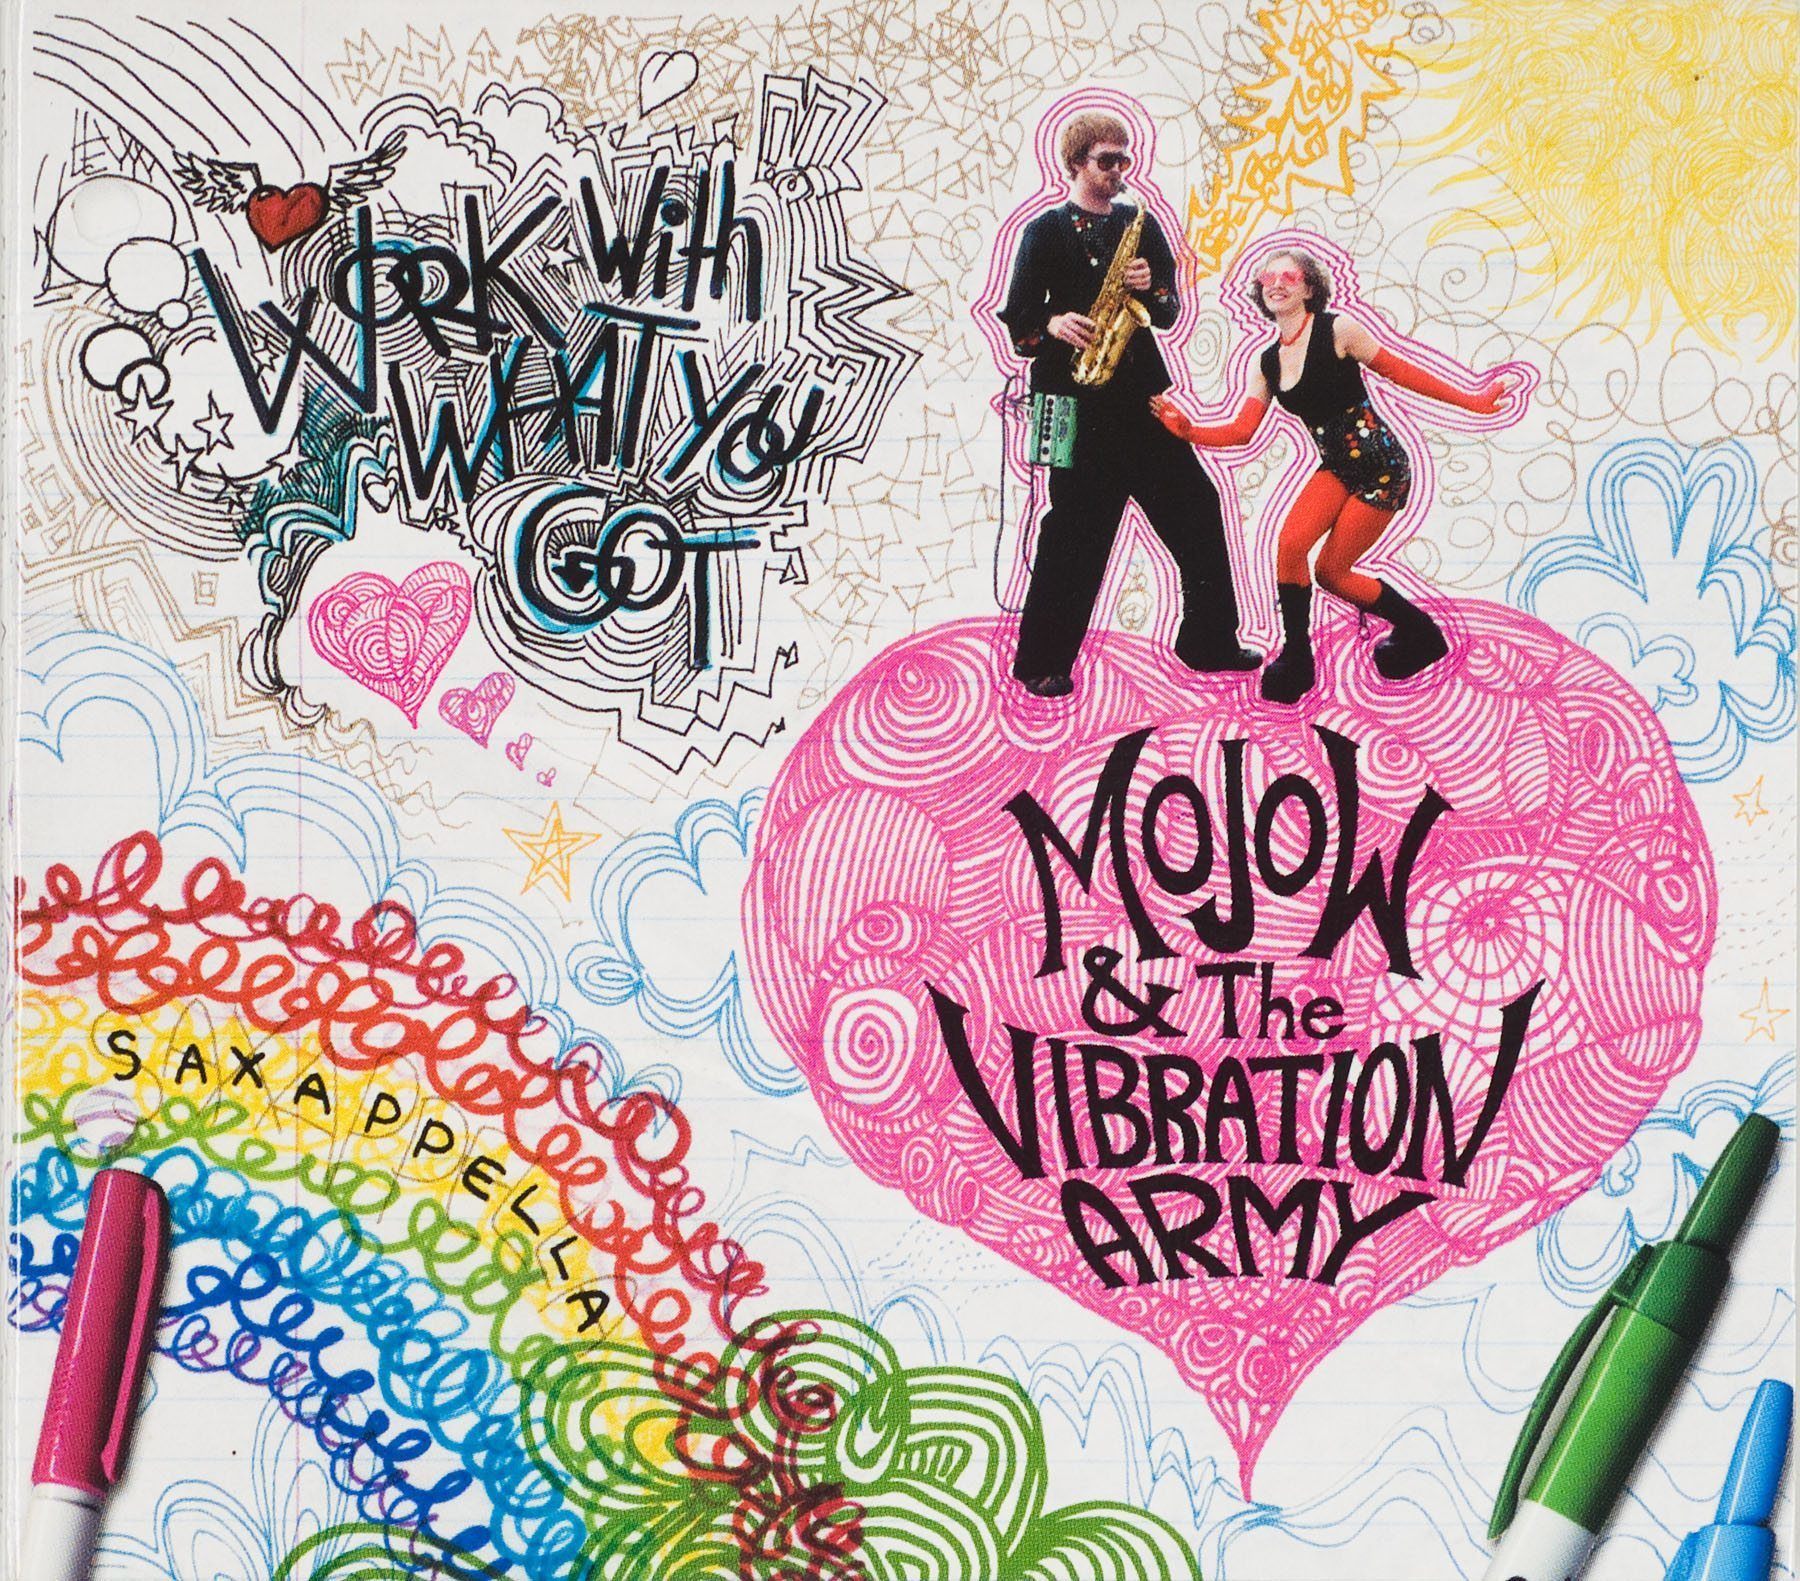 Mojow & the Vibration Army: WWWYG